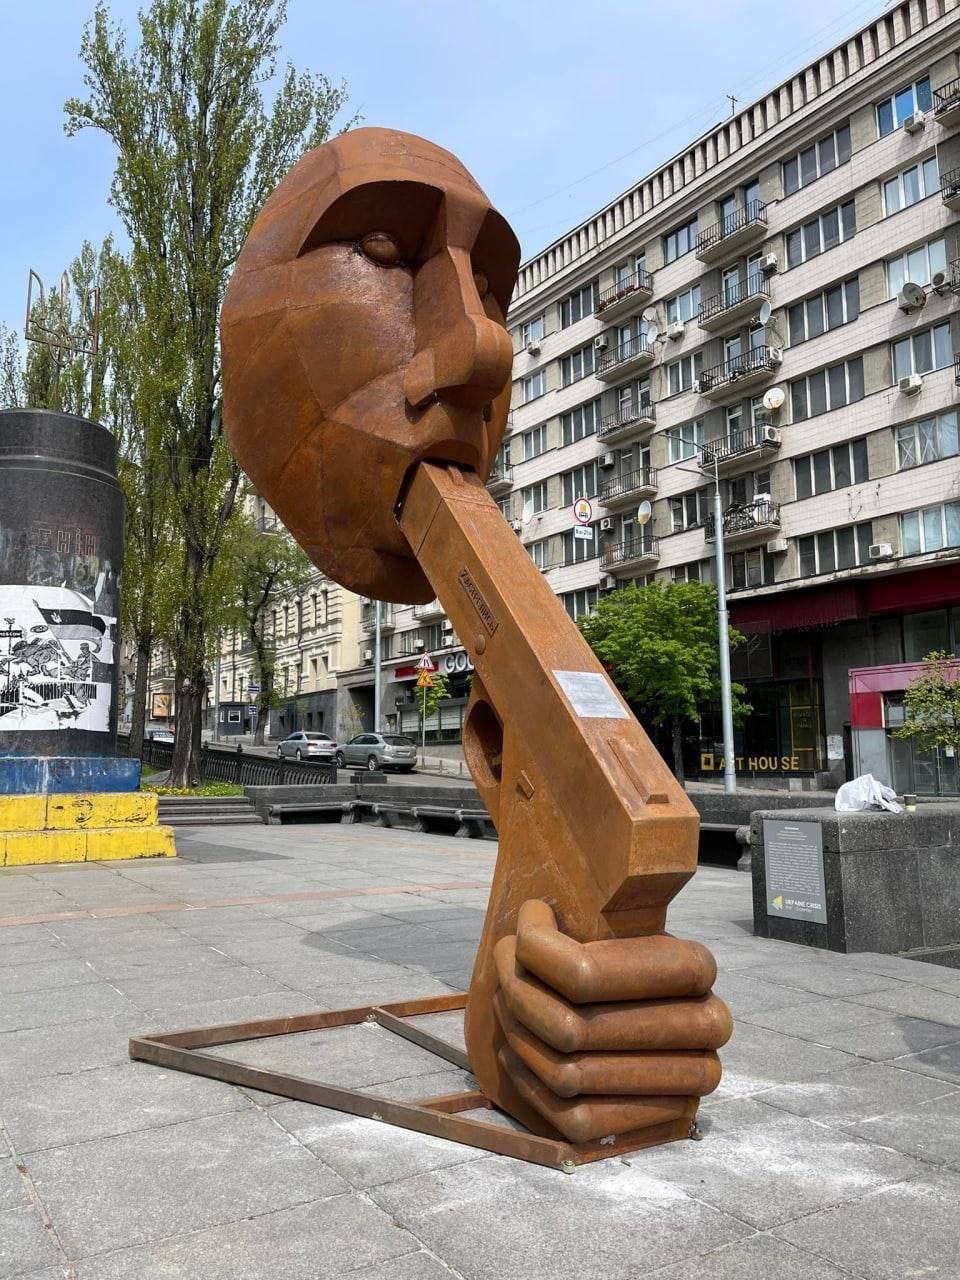 키이우에 설치된 푸틴 동상.jpg